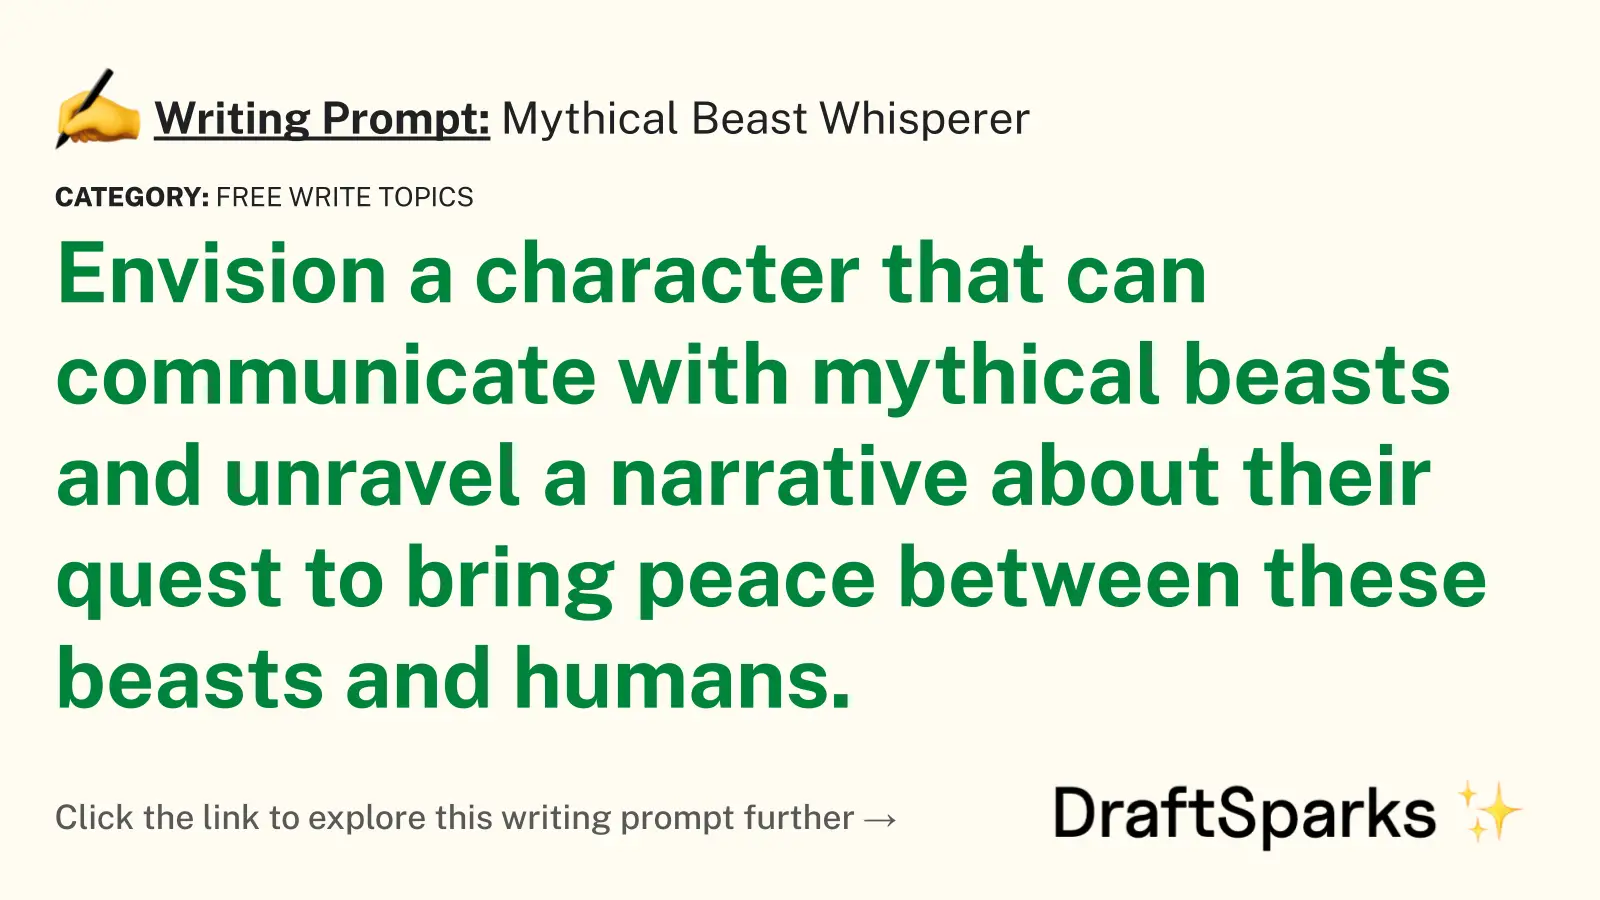 Mythical Beast Whisperer